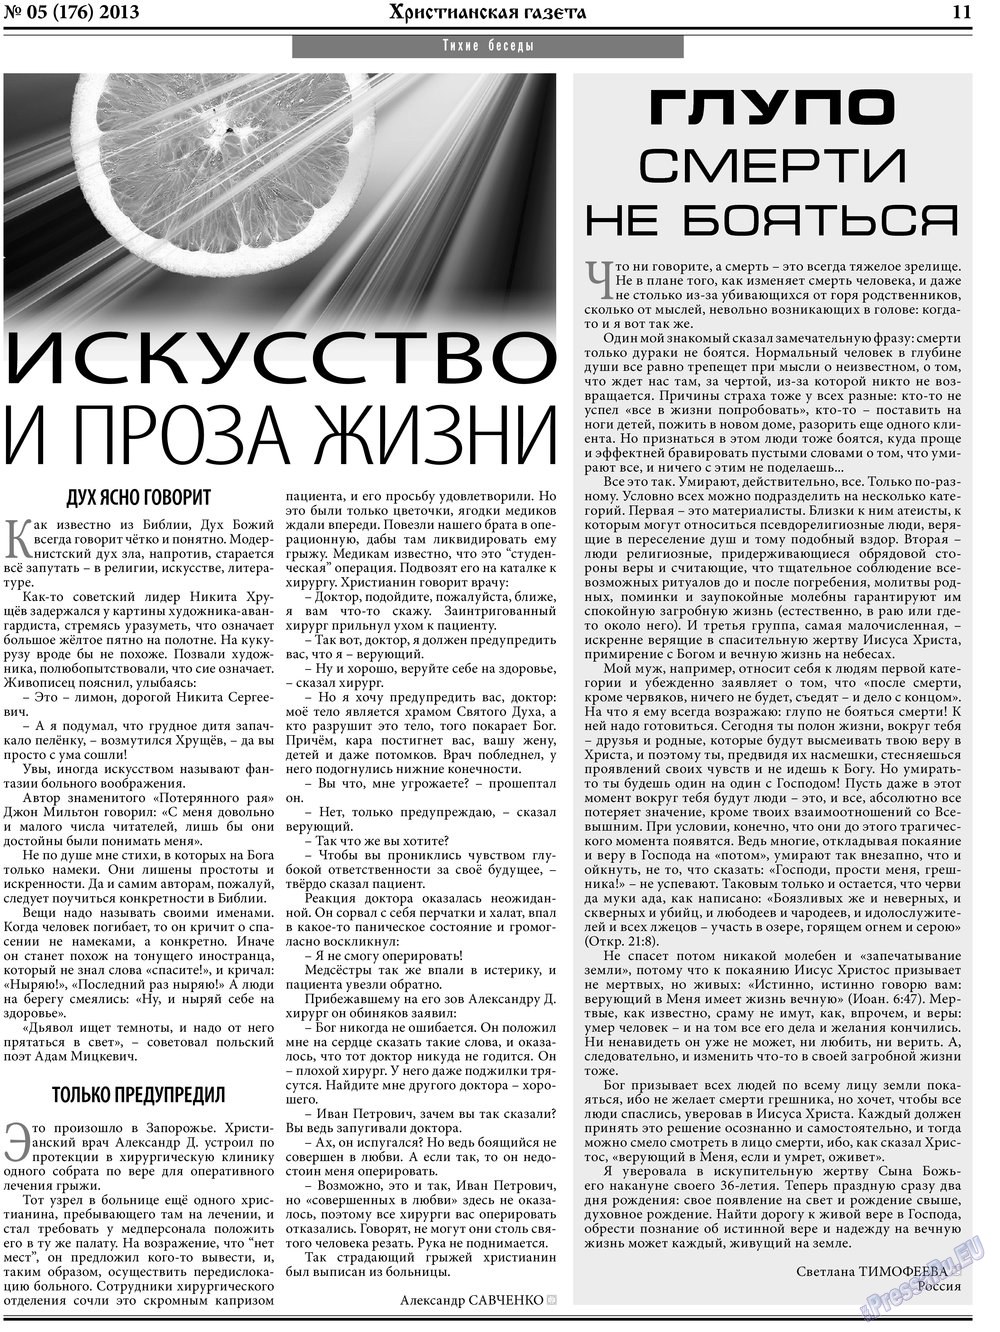 Христианская газета (газета). 2013 год, номер 5, стр. 11